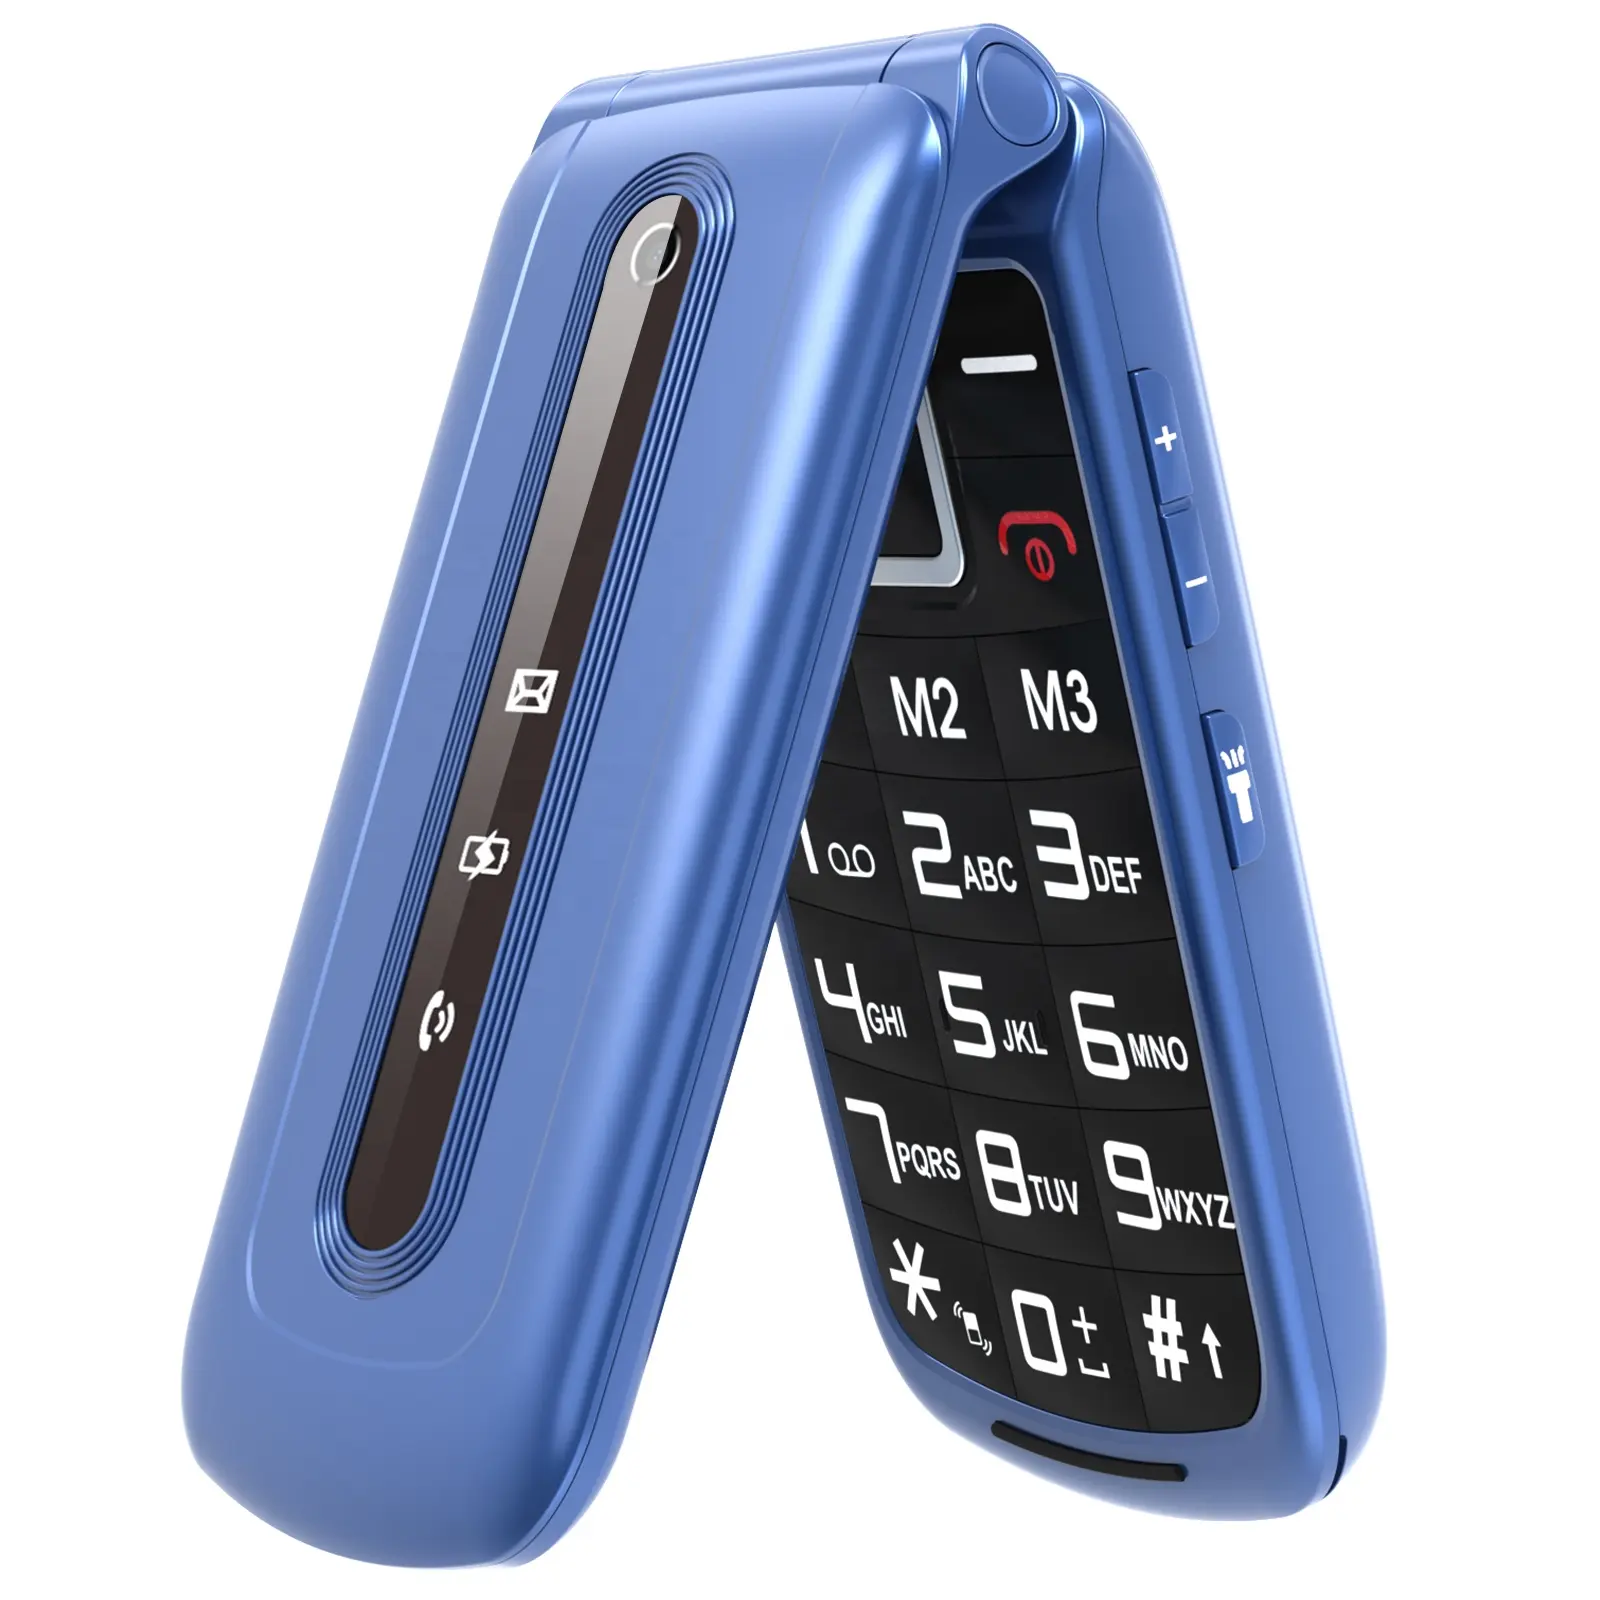 Ushining Teclado grande Flip Phone 4G Celular mais vendido com doca de carregamento FM Bluetooth 2.4'' LCD celular